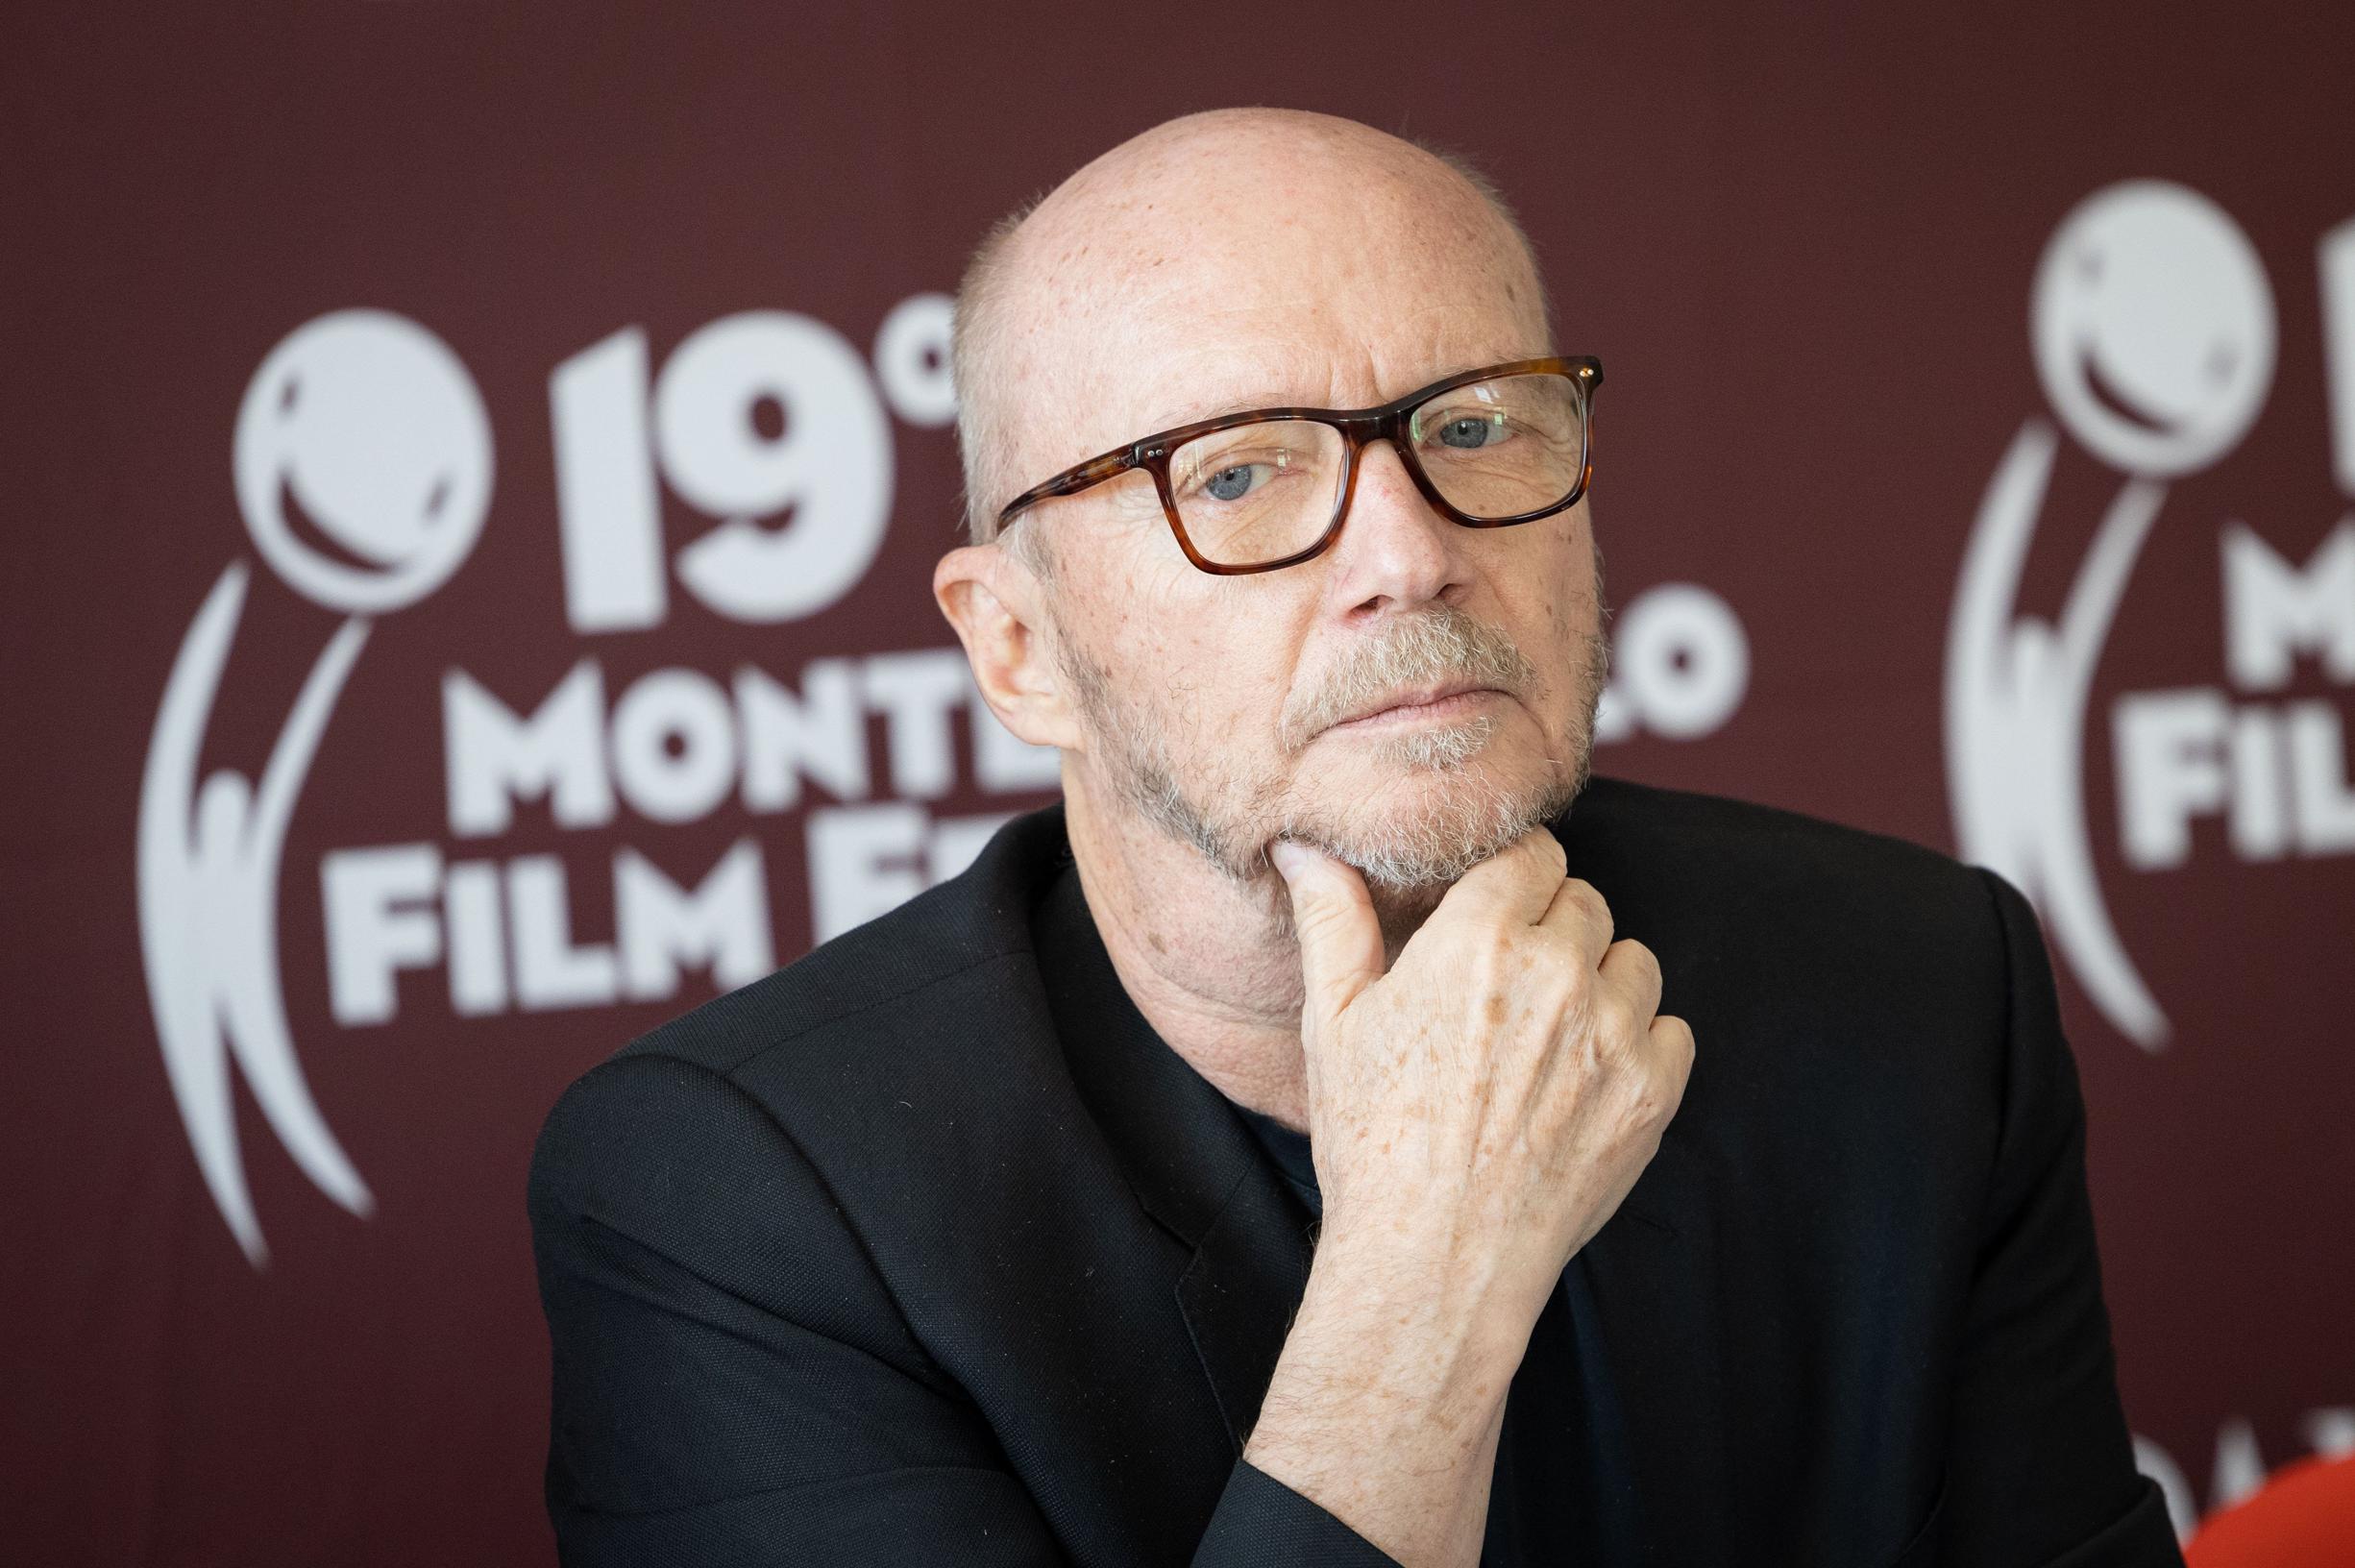 Il regista premio Oscar Paul Hawkis è stato arrestato in Italia con l’accusa di molestie sessuali